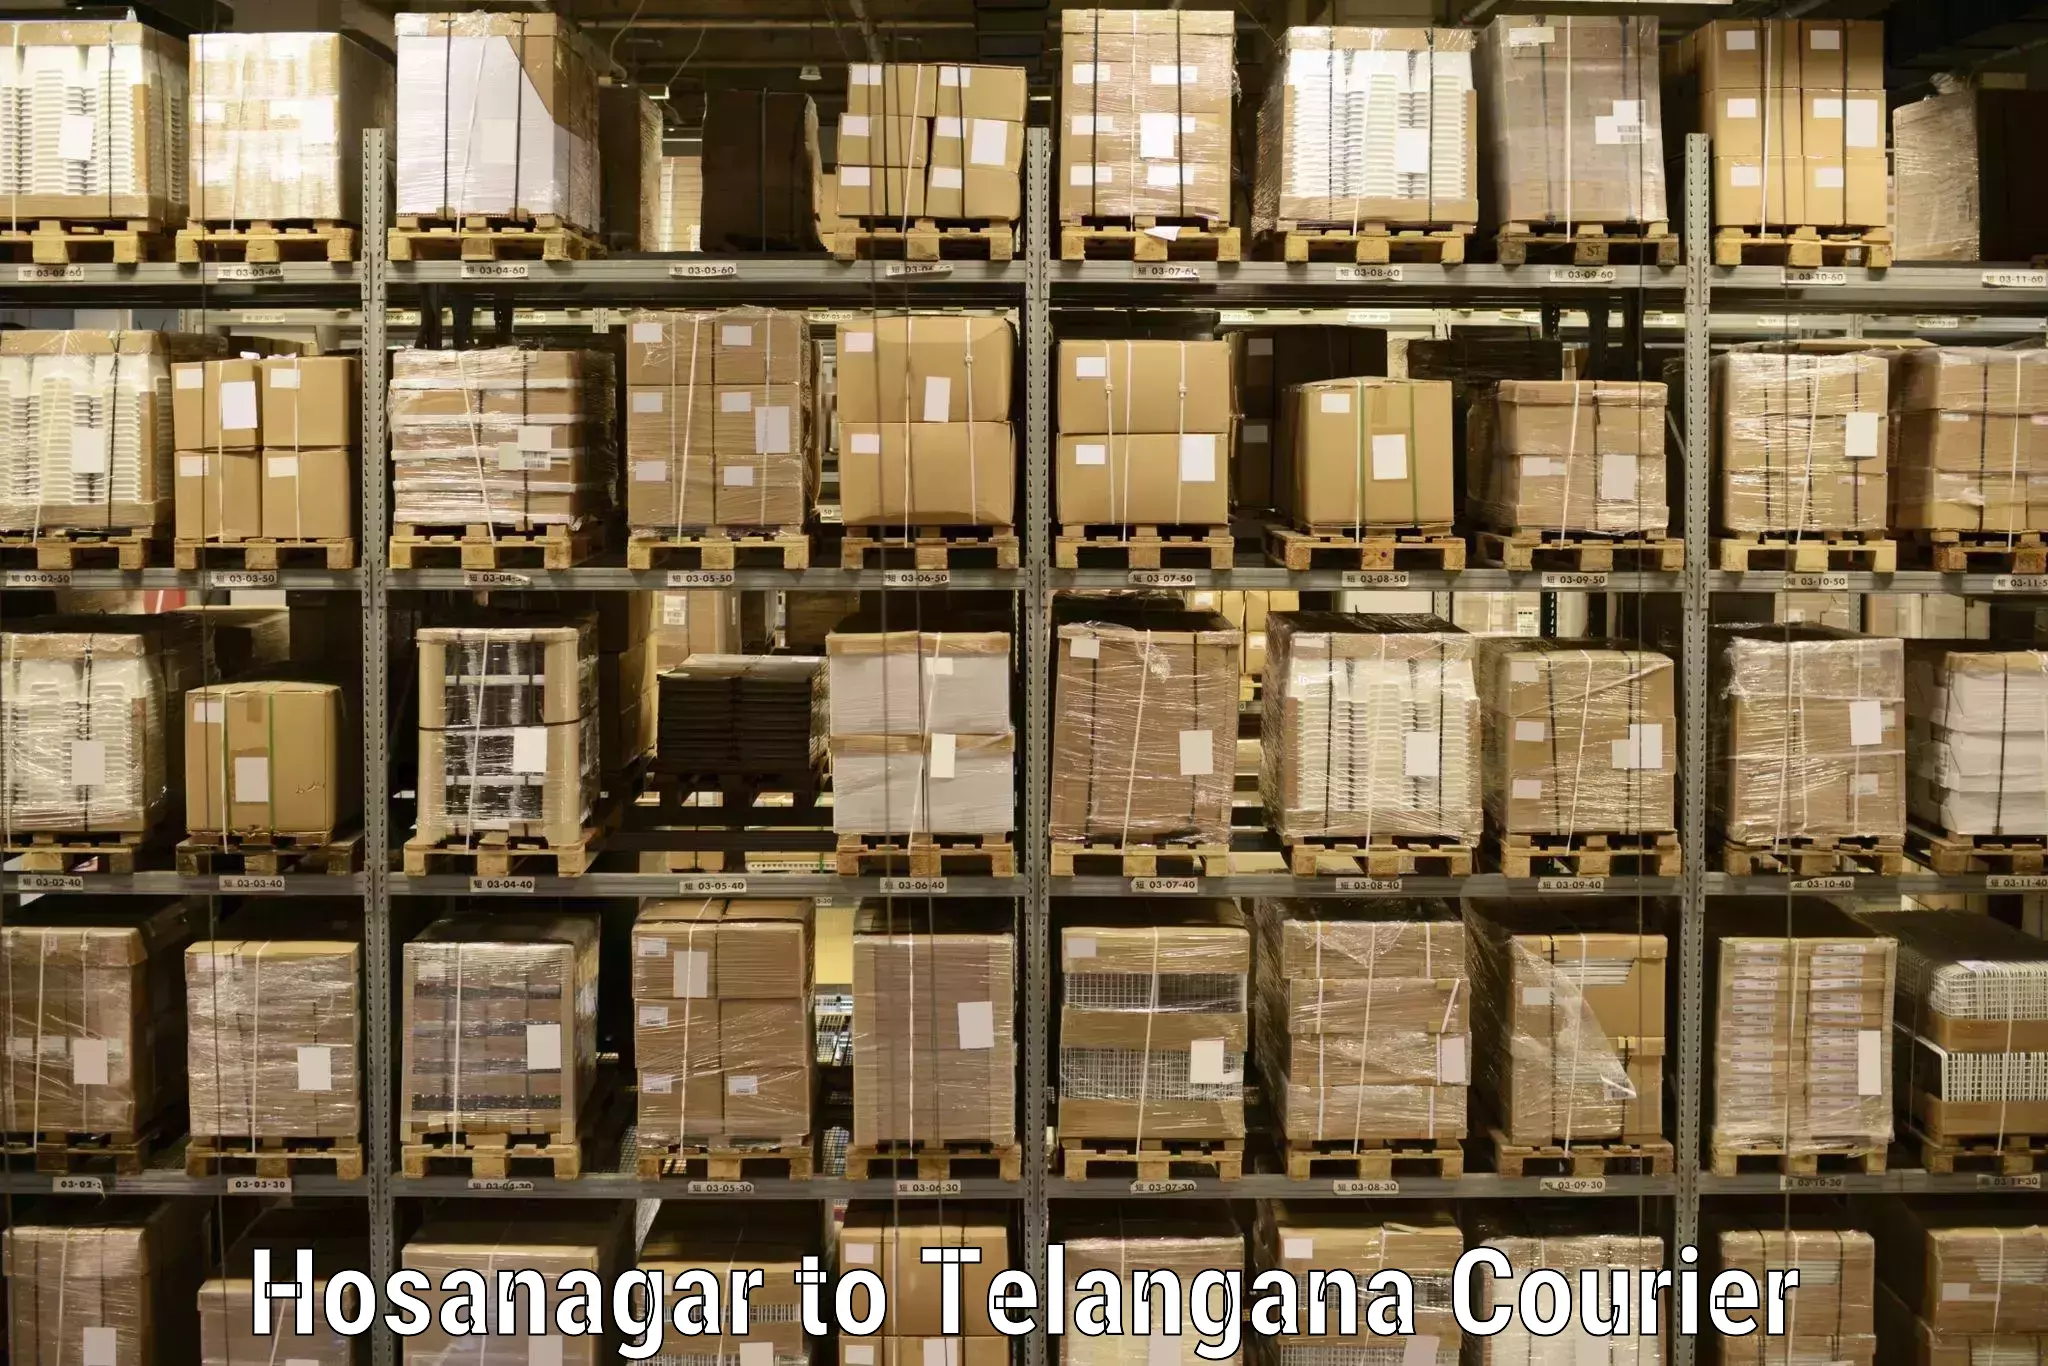 Courier service comparison in Hosanagar to Hayathnagar